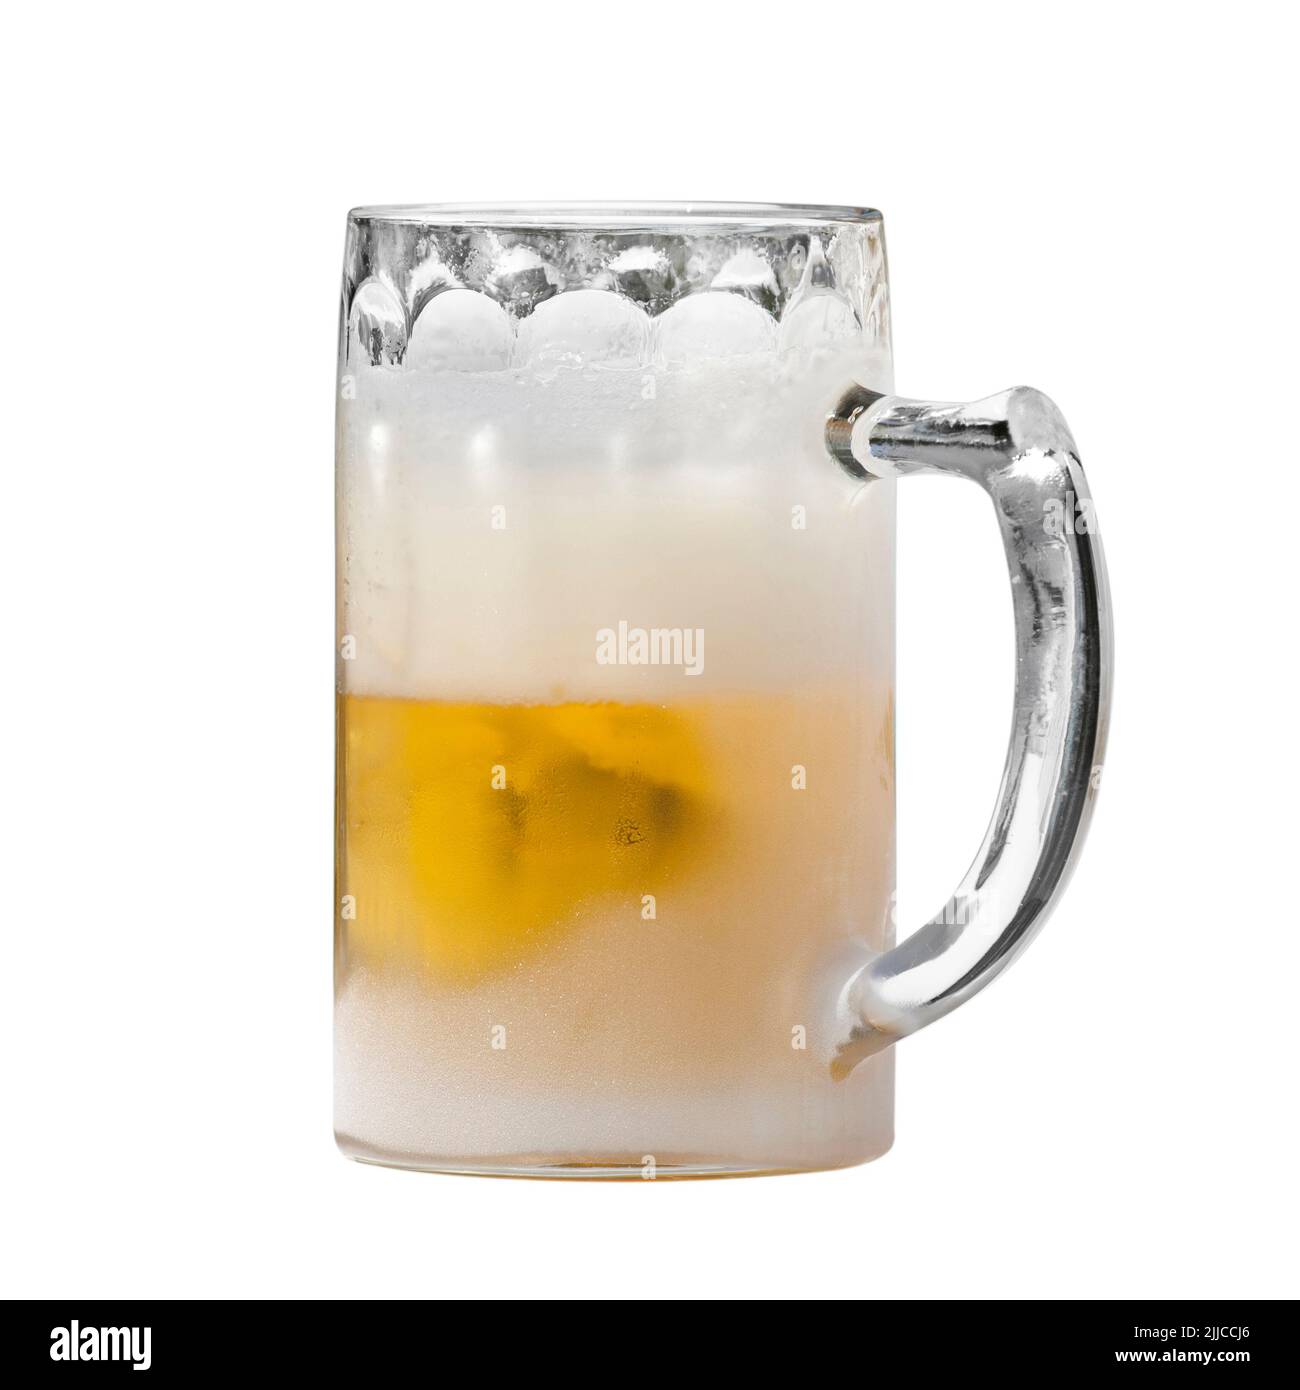 Extrem kaltes Glas mit Bier in einer sehr heißen Sommerzeit. Bild auf Weiß mit einem Beschneidungspfad isoliert. Stockfoto